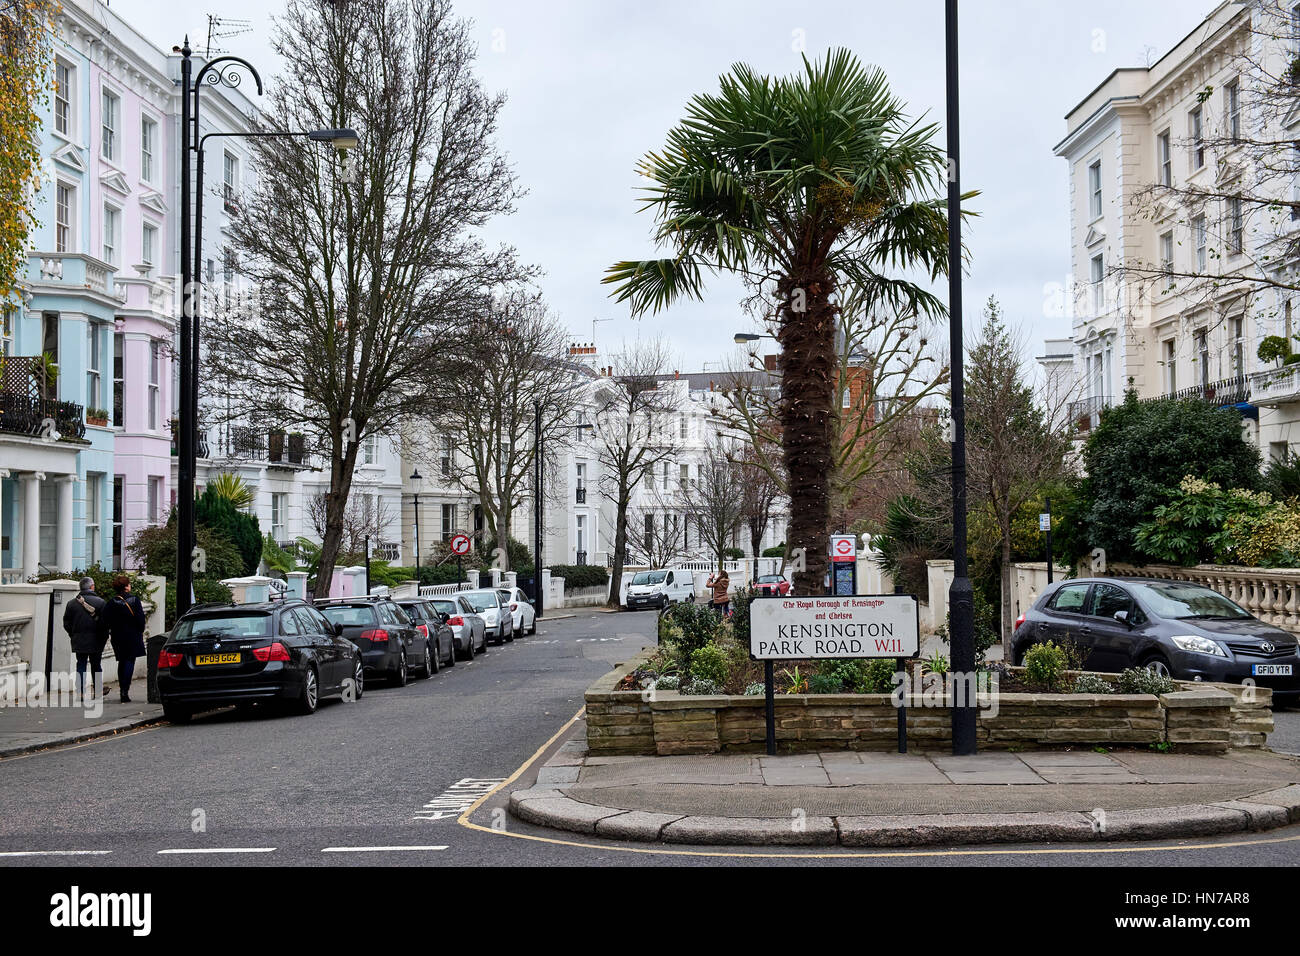 LONDON CITY - 25 dicembre 2016: tipico le case dai colori pastello in Notting Hill che circonda una piccola piazza con palme Foto Stock